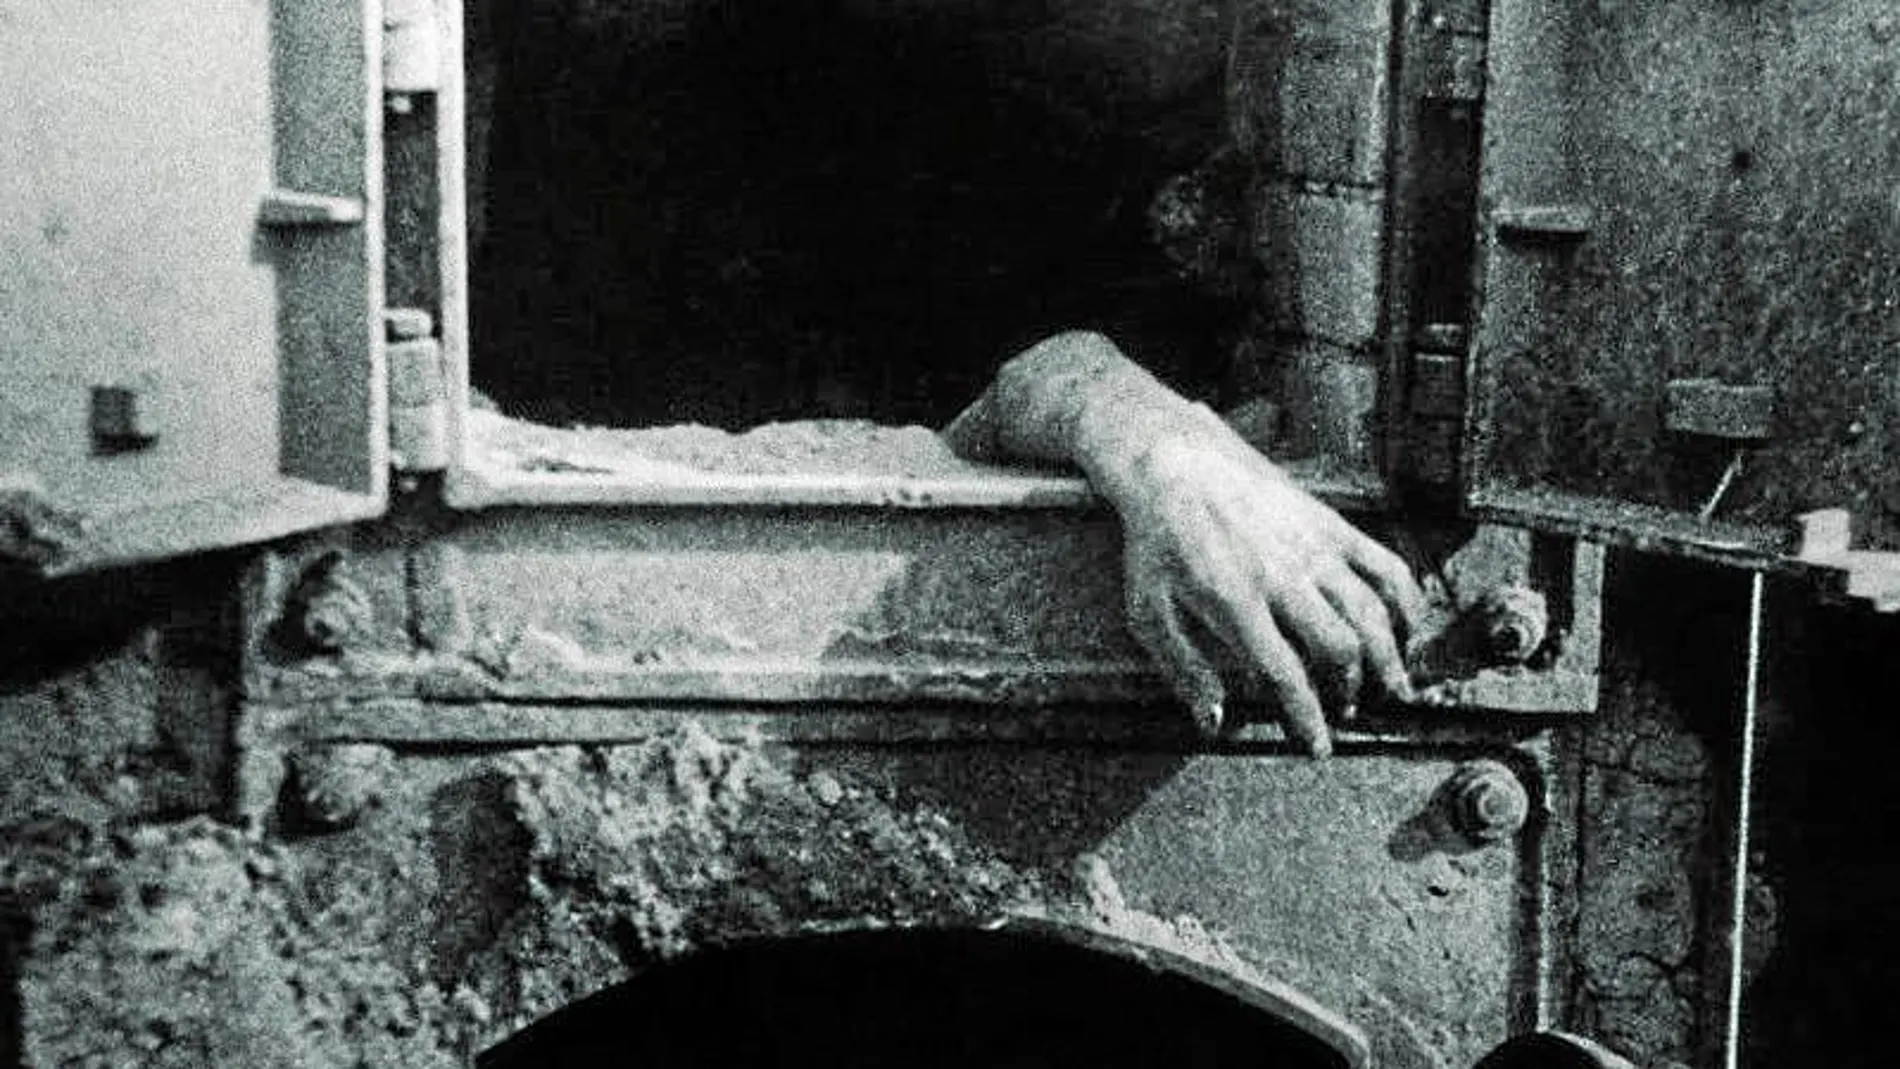 Una mano en un horno crematorio, vivo ejemplo de las cotas de maldad que se alcanzaron en la Segunda Guerra Mundial